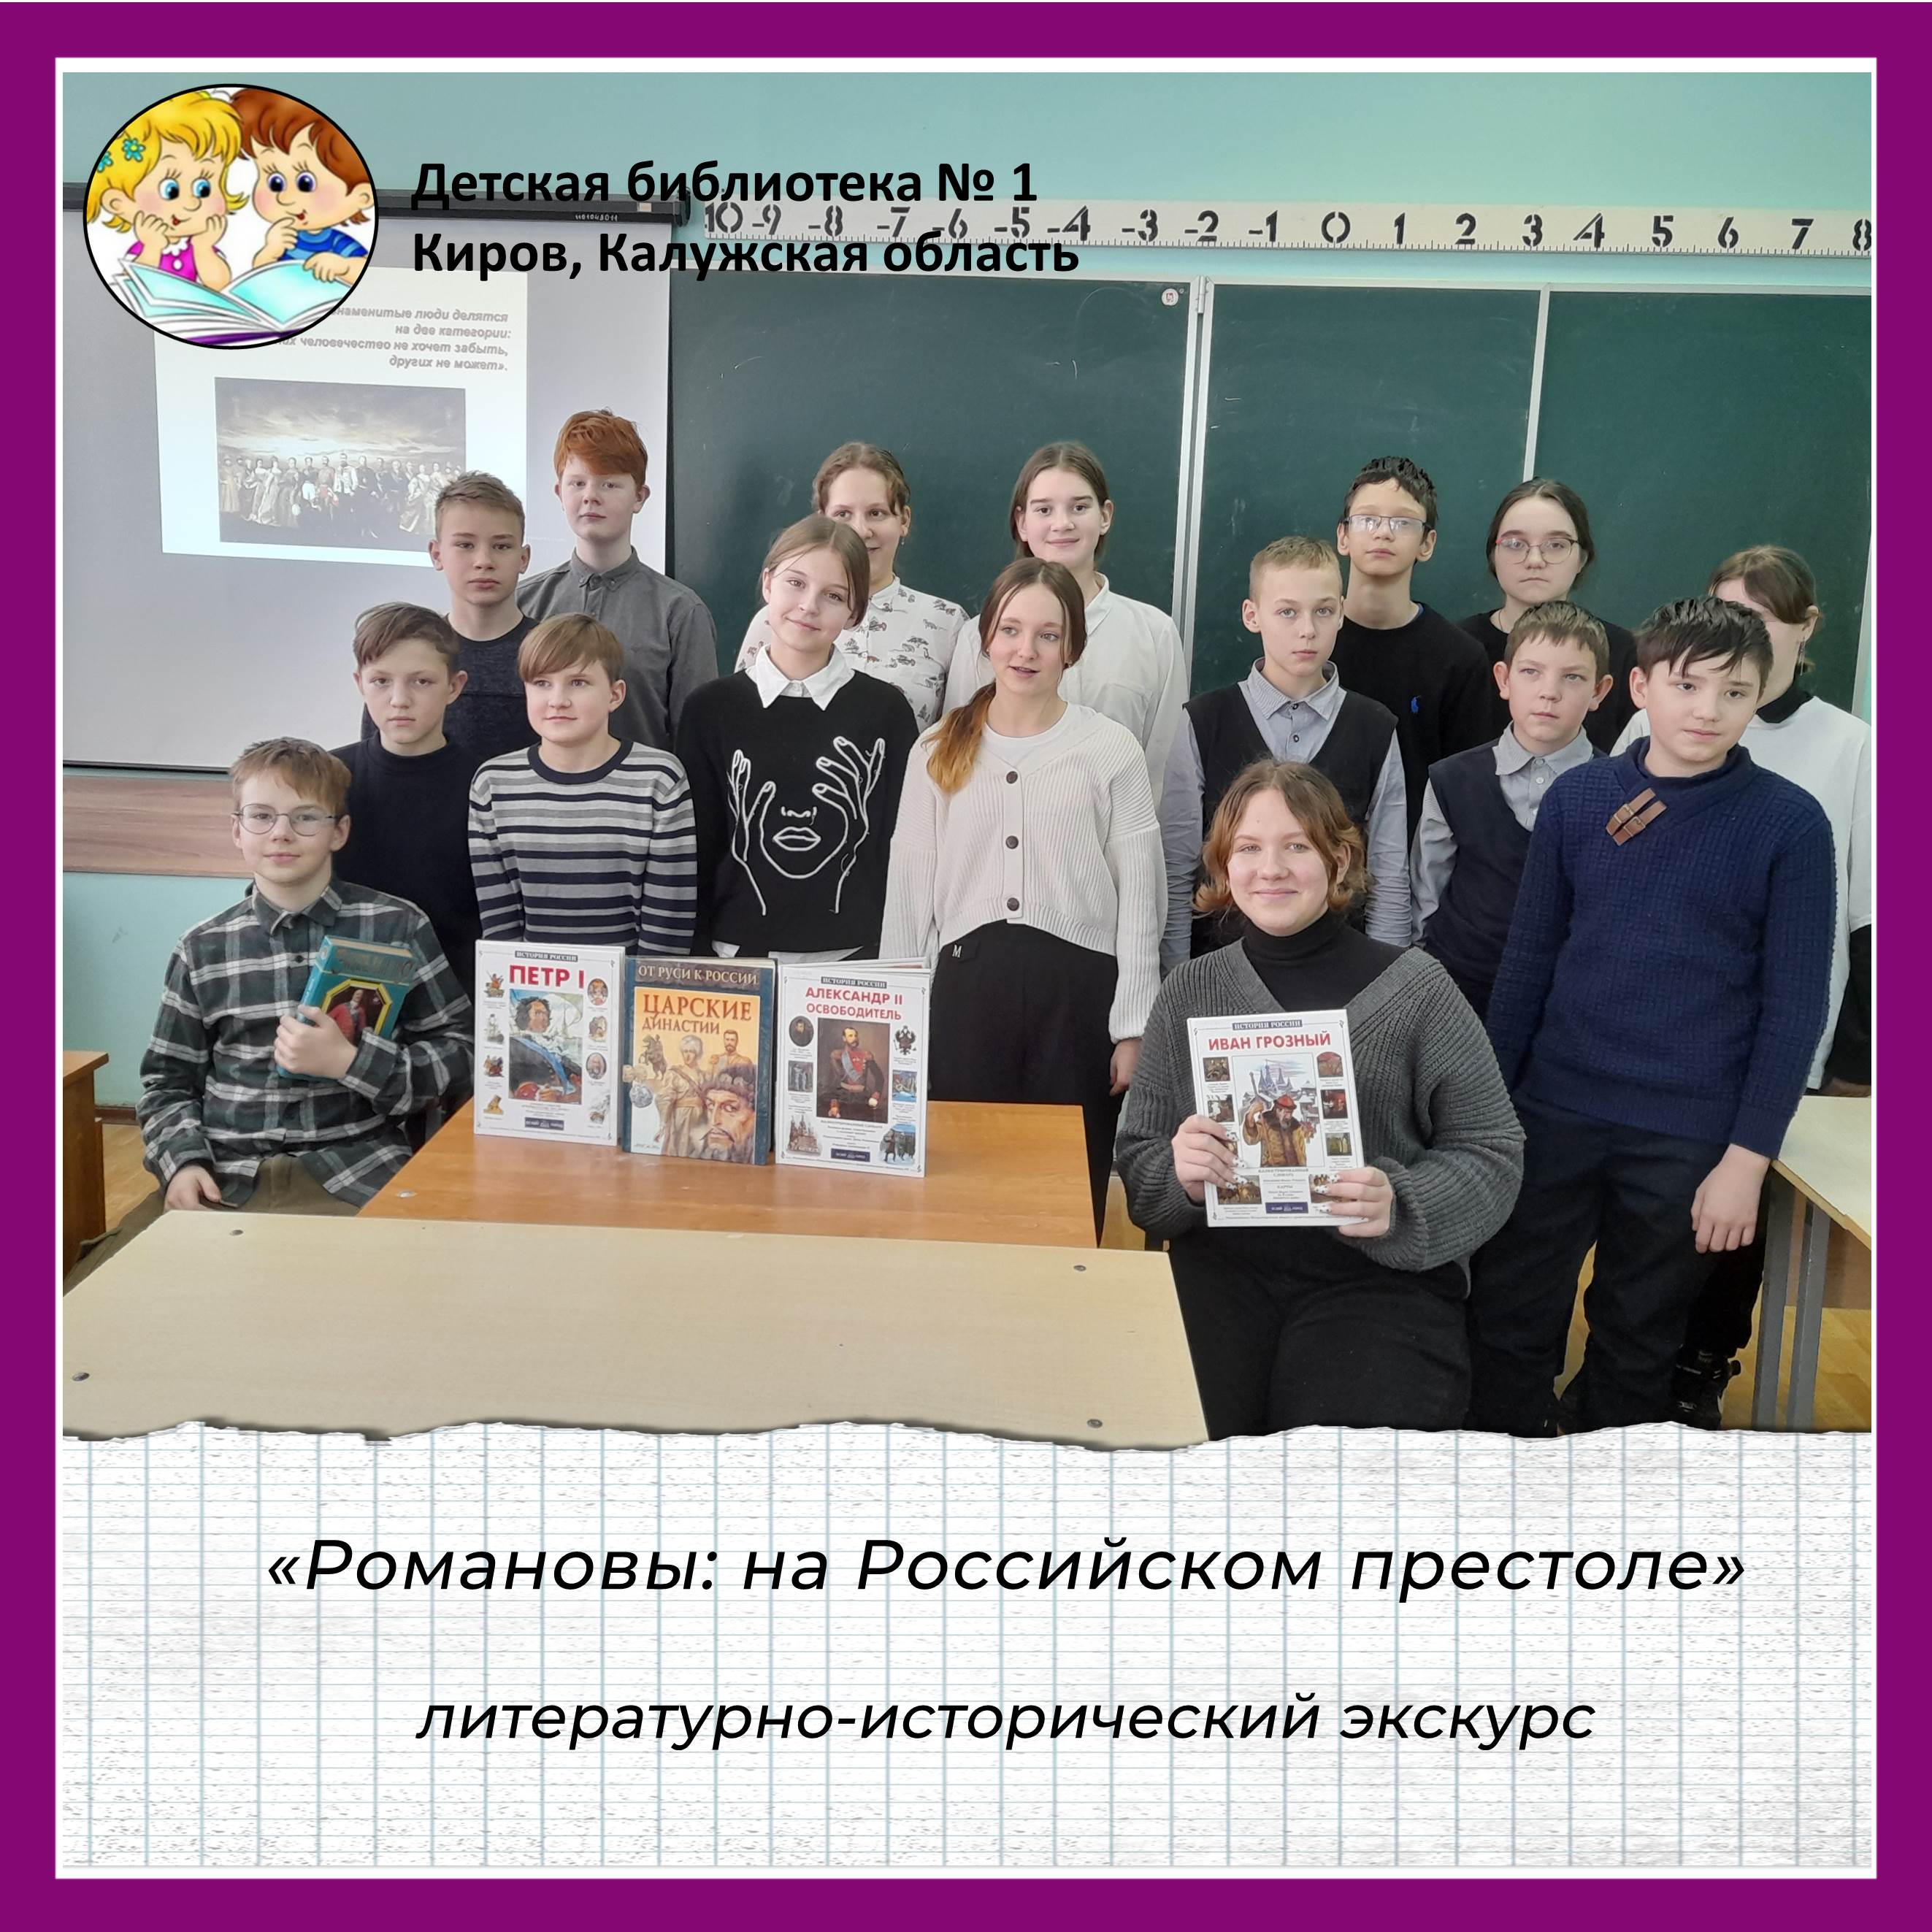 «Романовы: на Российском престоле».